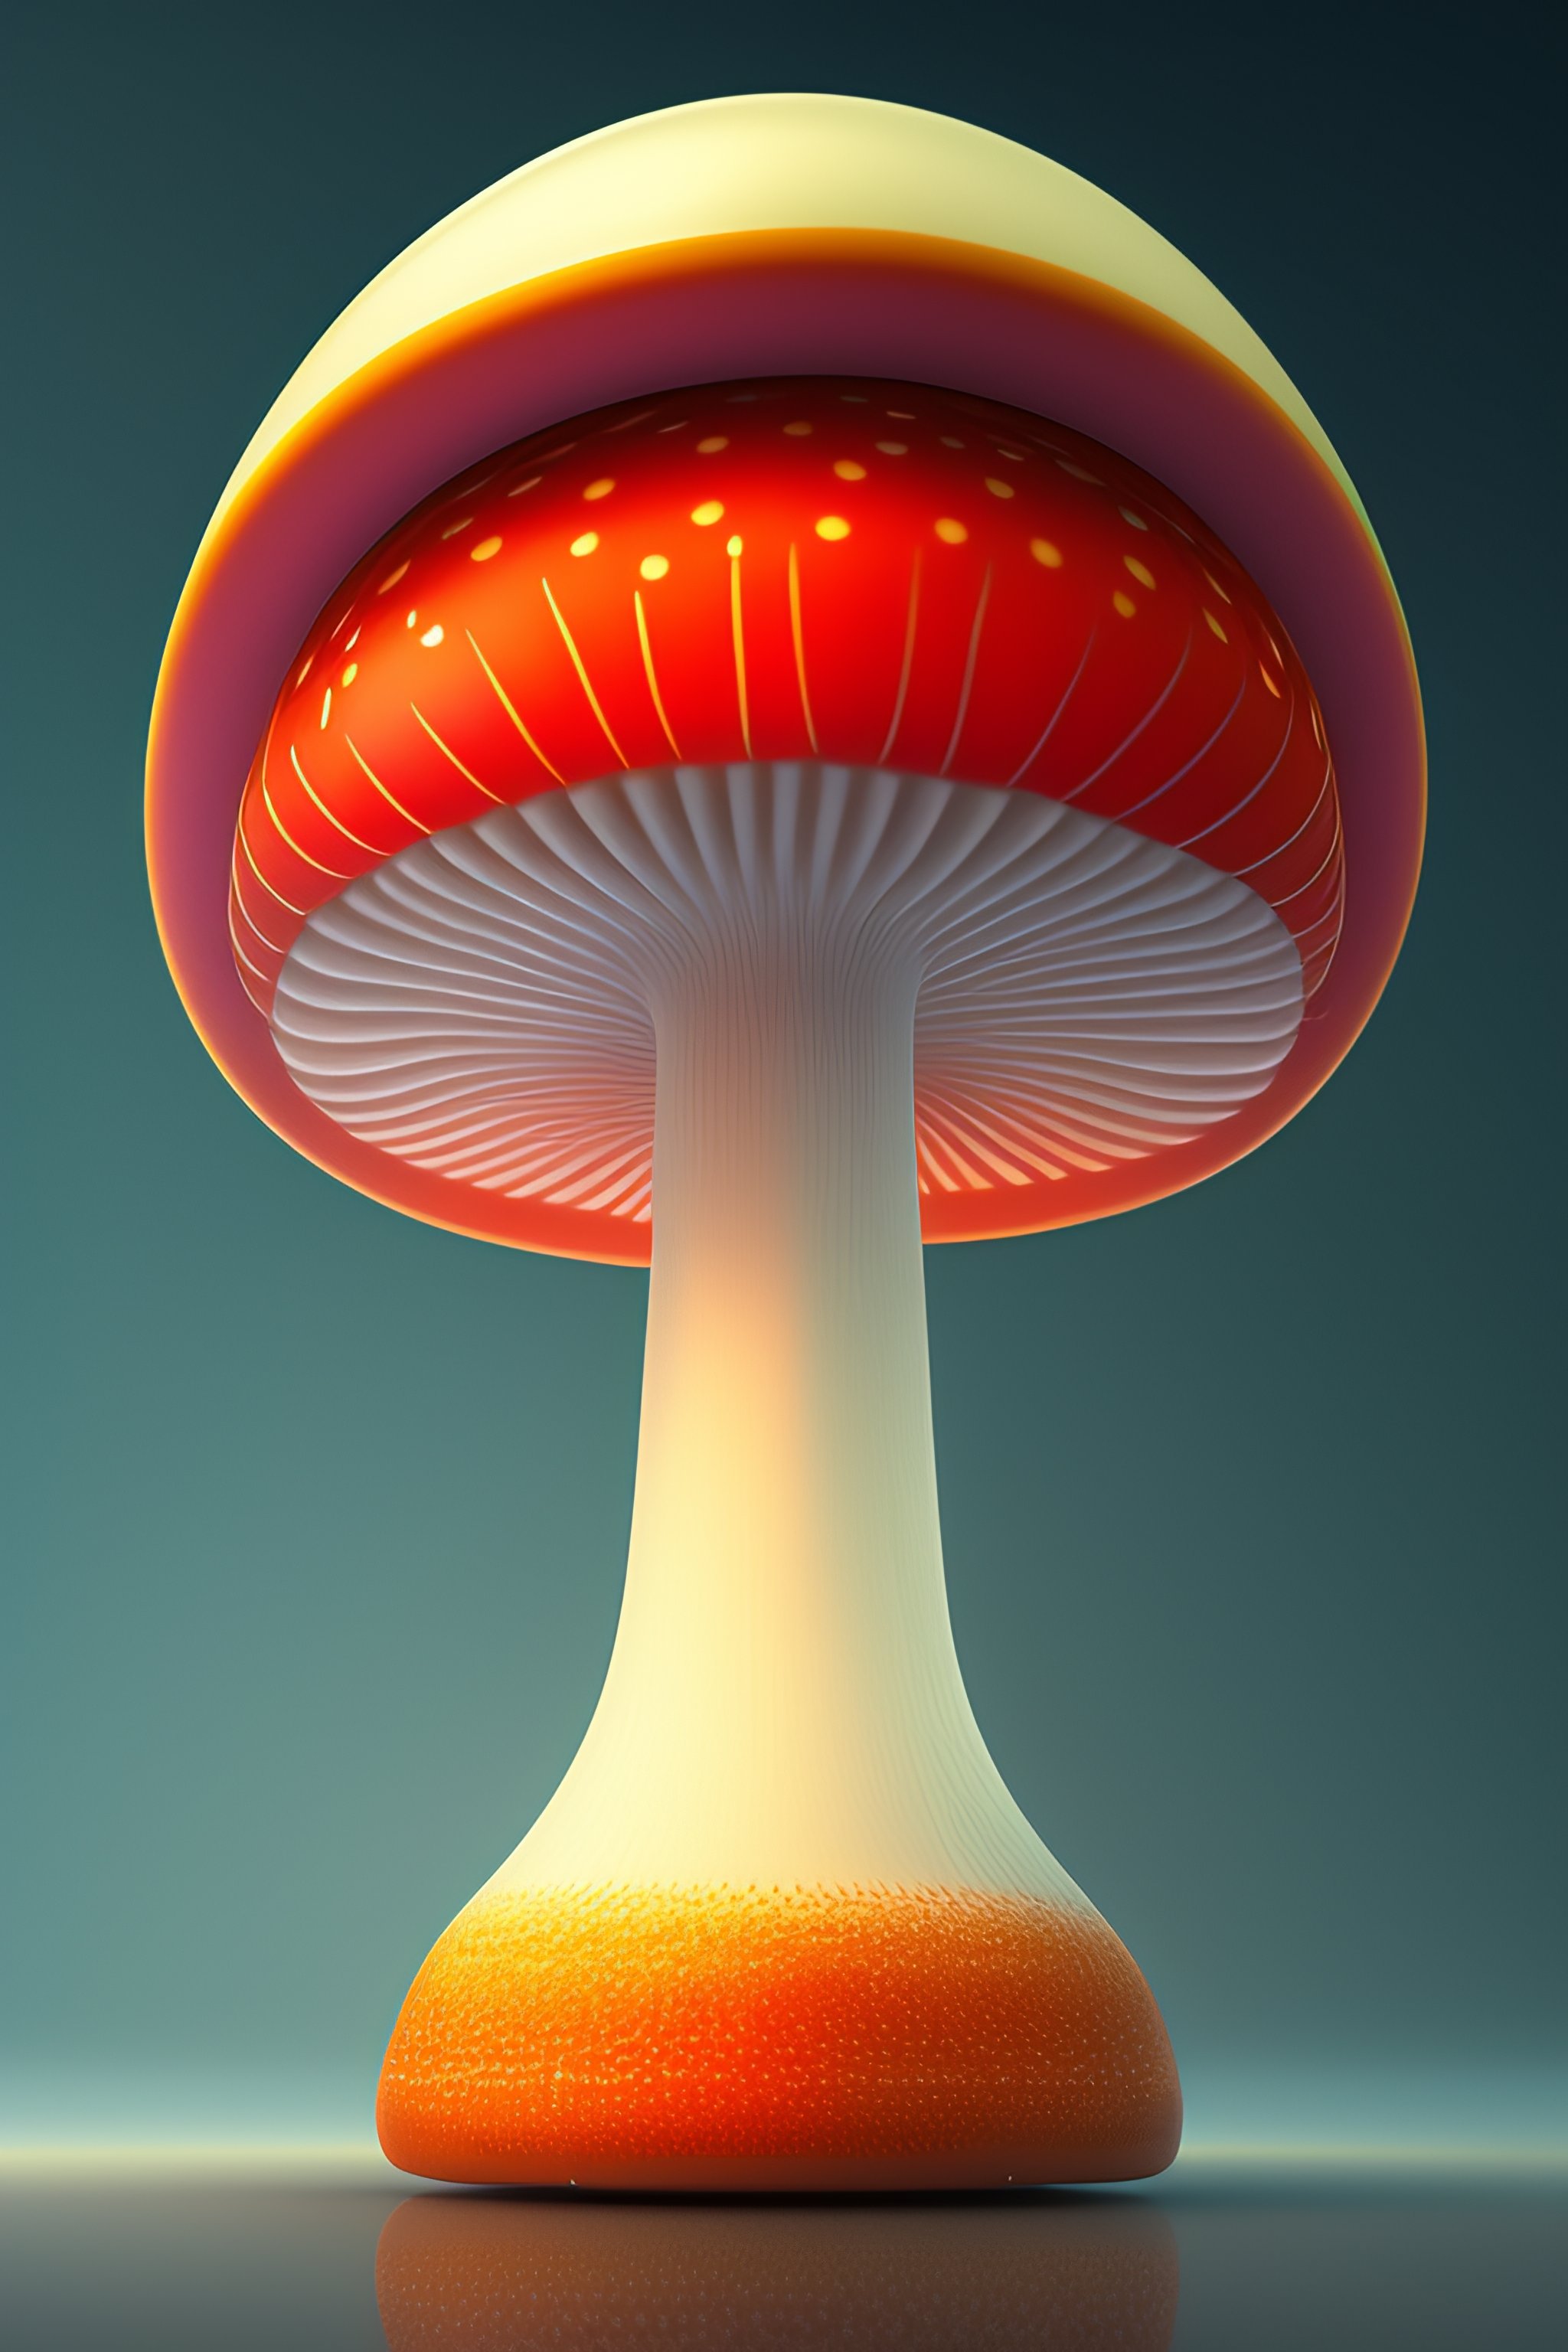 Lexica 2 D Illustration Concept Art Behance Artstation 4 K 8 K Giant Mushroom Amanita 